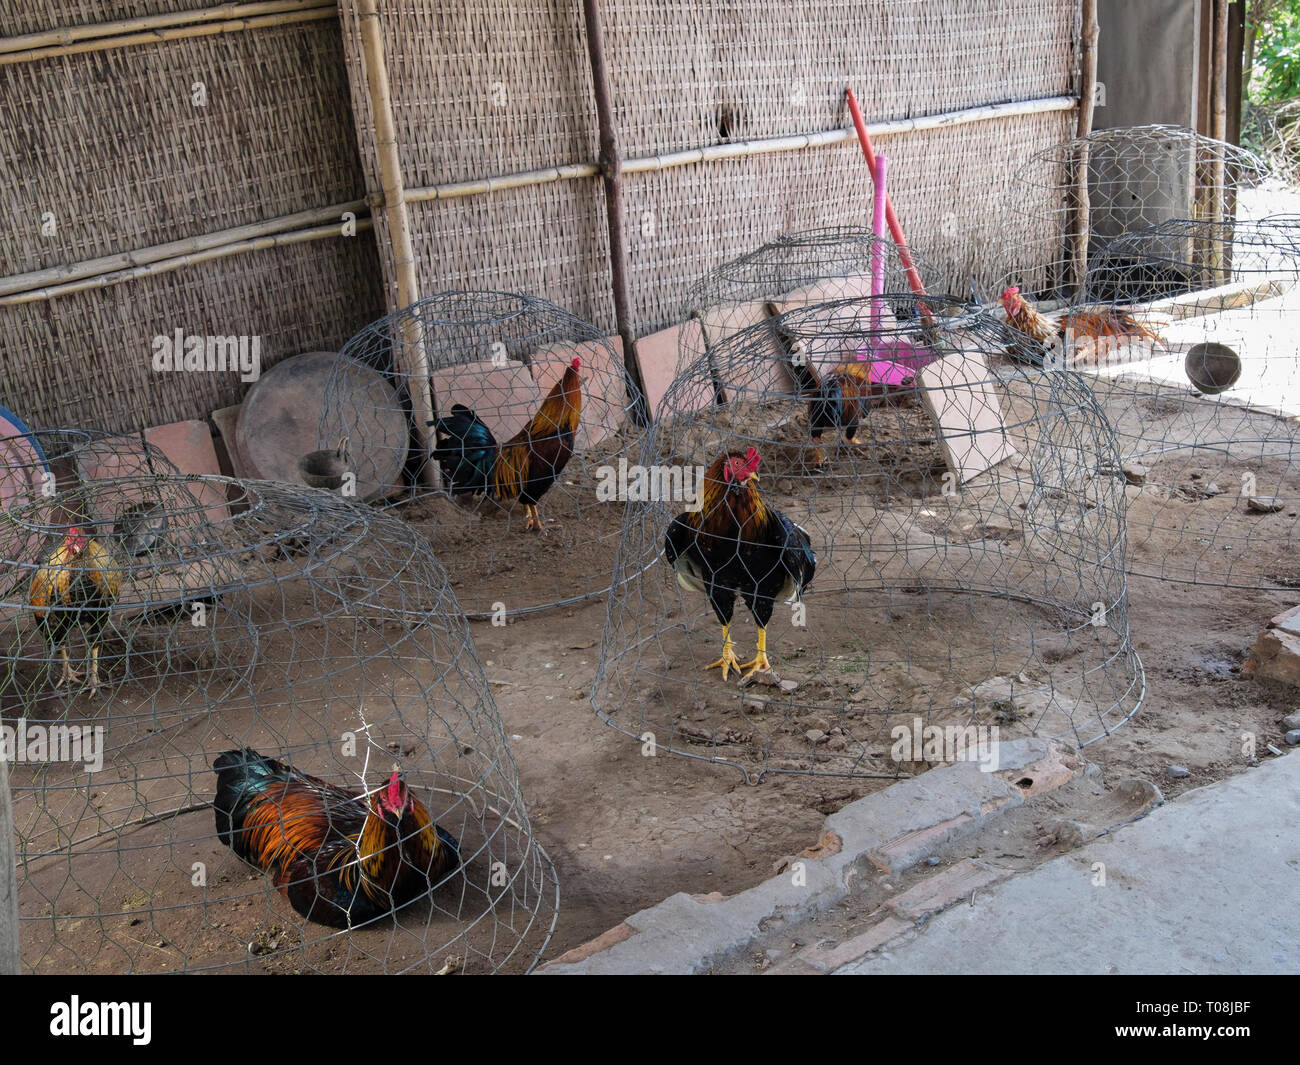 Poulets en cage dans des petites cages sur sol nu. Tiền Giang à Cai Be, Province, Delta du Mékong, Vietnam, Asie Banque D'Images